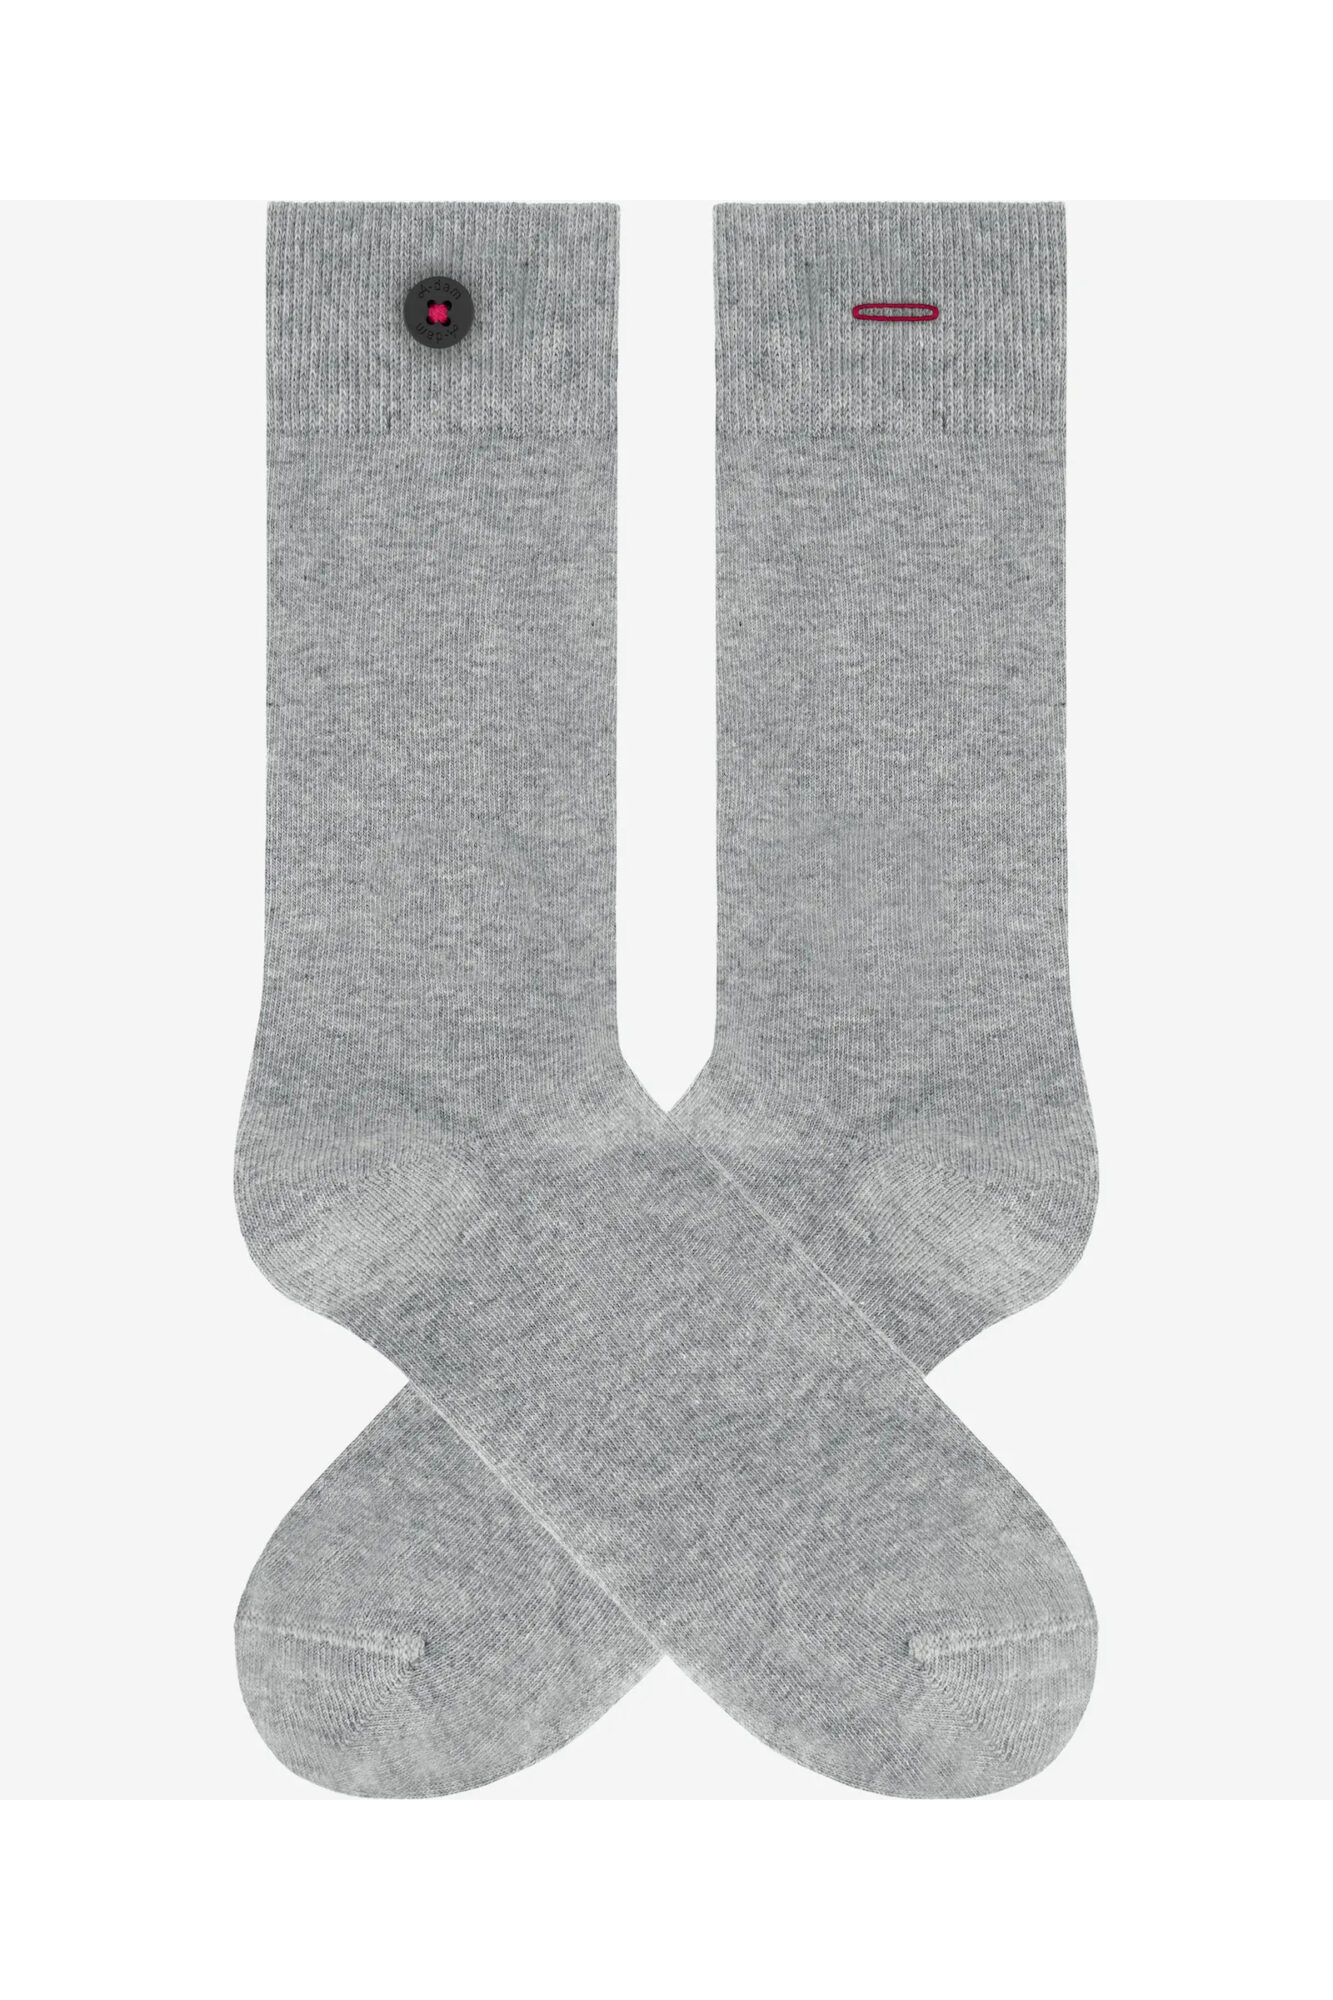 Adam Socken Grey Shade Grau 2